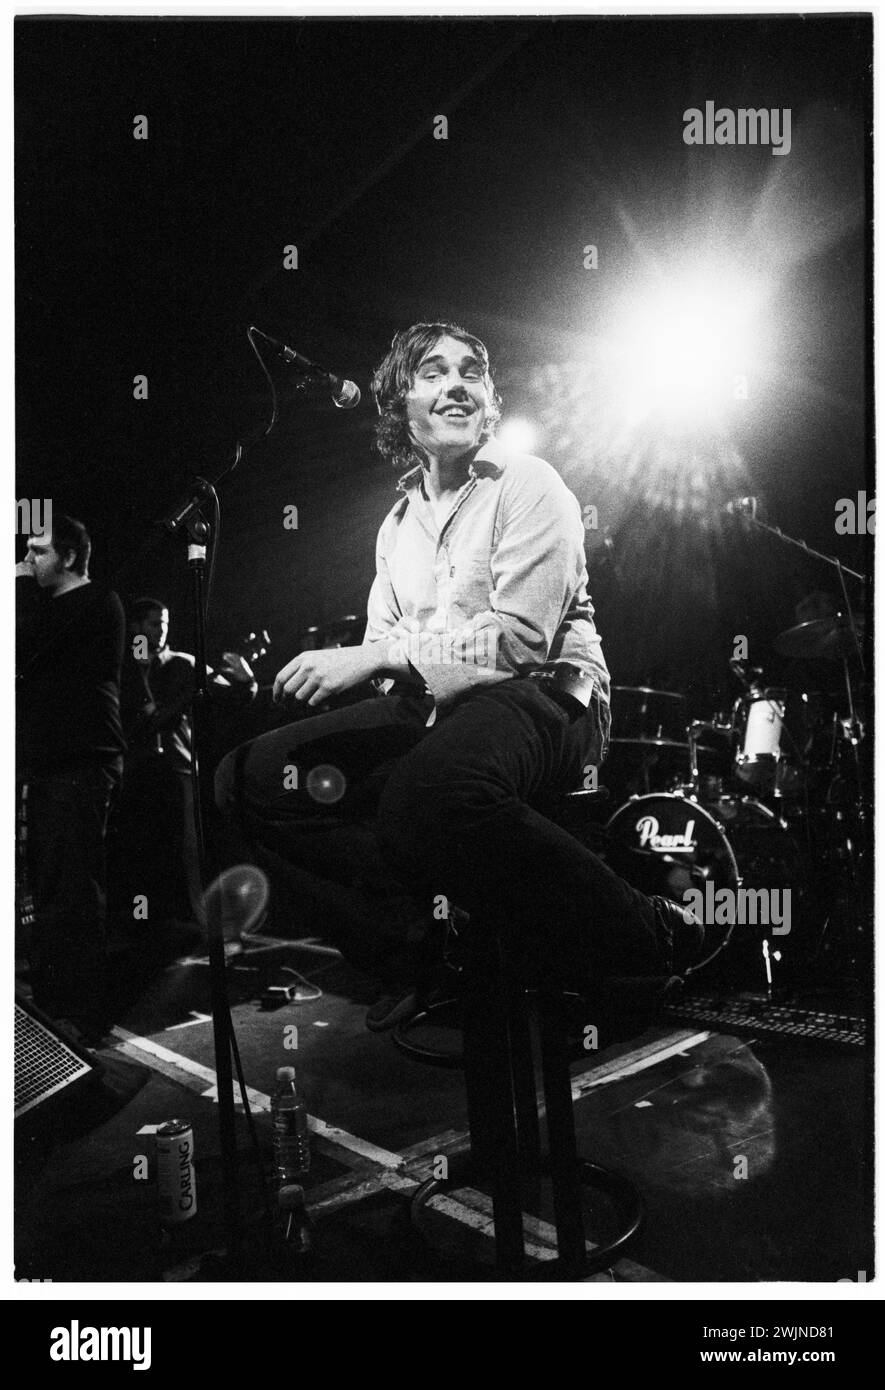 Lee Gorton della rock band Alfie ha suonato nel NME Bratbus Tour al Cardiff University Terminal di Cardiff, Galles, il 2 febbraio 2001. Foto: Rob Watkins. INFO: Alfie, una band britannica degli anni '90 e '2000, ha infuso la loro musica con fascino indie rock e lirismo introspettivo. Brani come "You Make No Bones" e "Bookends" mostravano la loro abilità melodica e la loro sincera scrittura di canzoni. Foto Stock